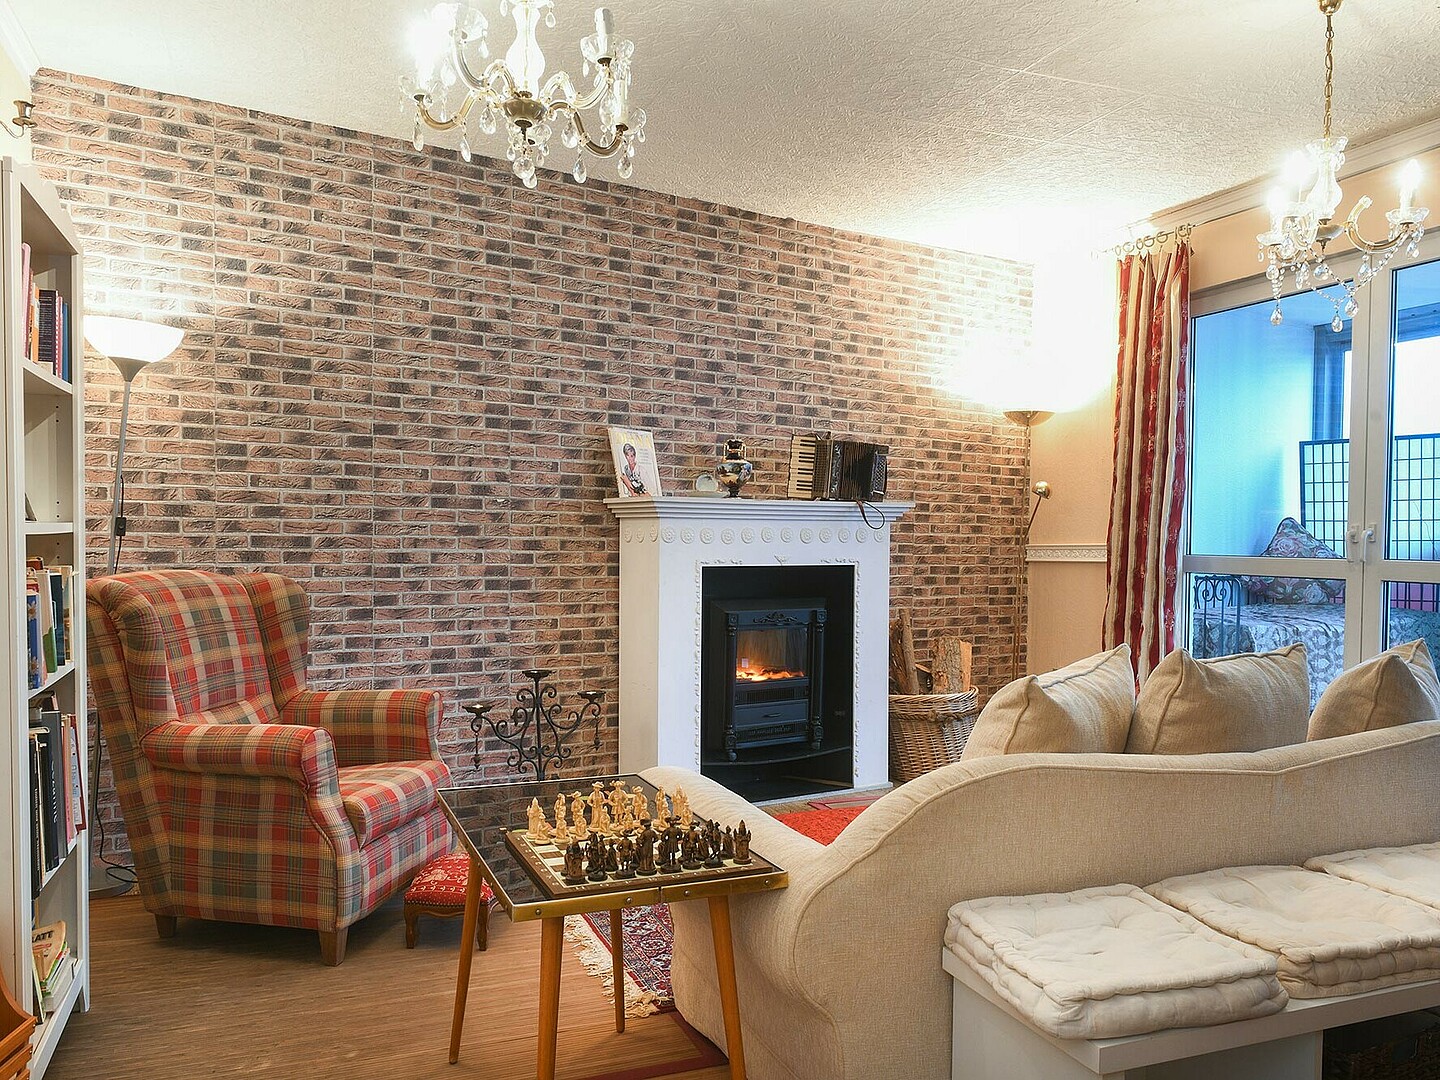 Ein gemütliches Wohnzimmer mit Schachbrett und Kamin, eingerichtet im englischen Landhausstil